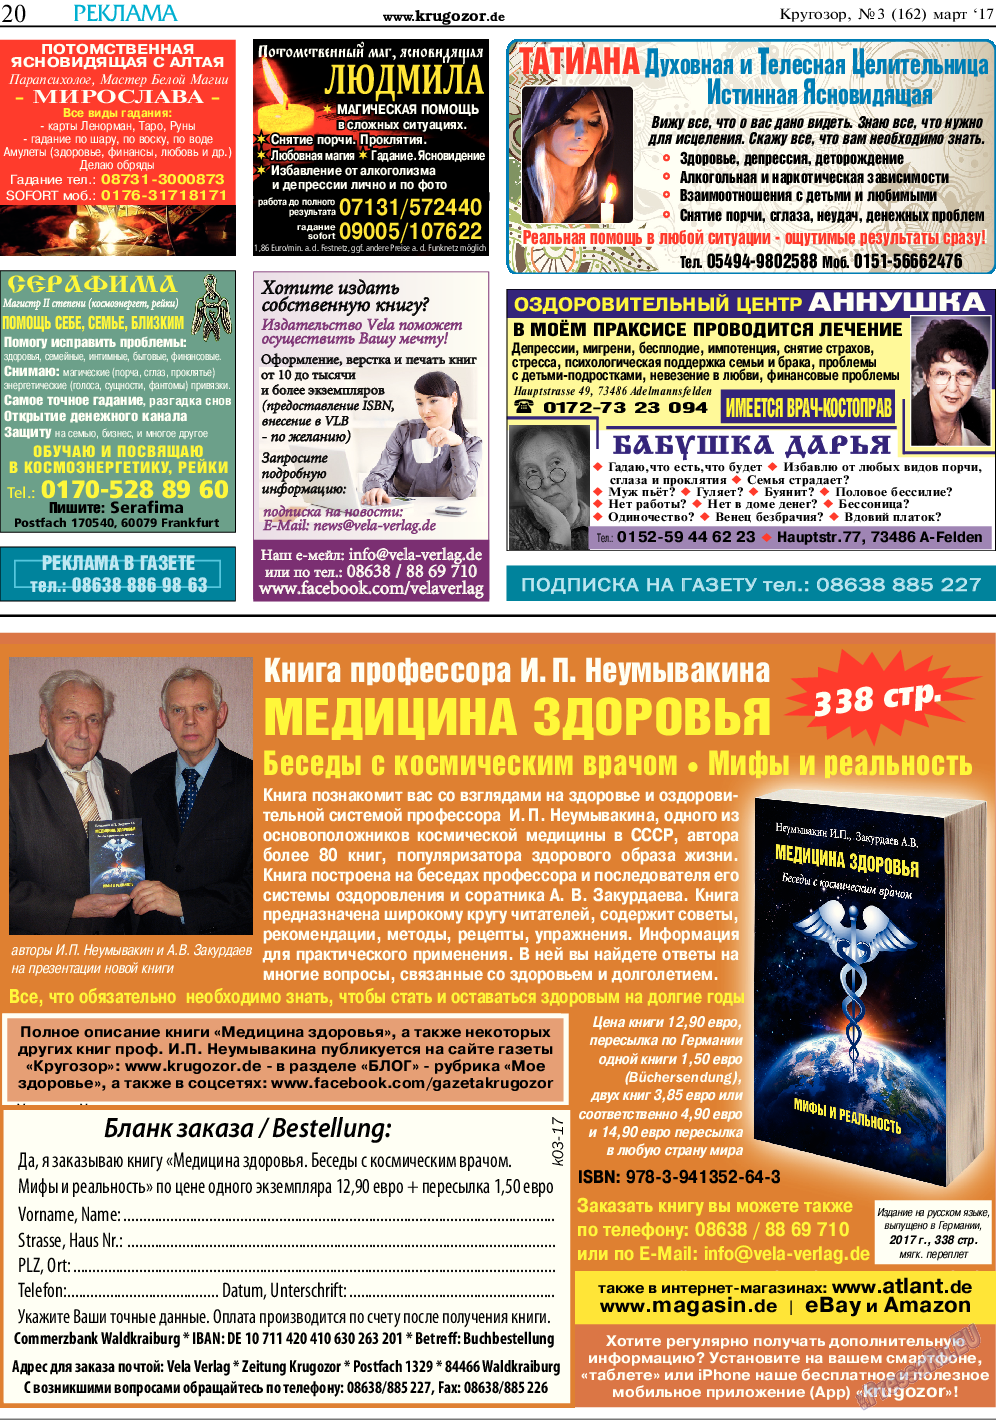 Кругозор, газета. 2017 №3 стр.20